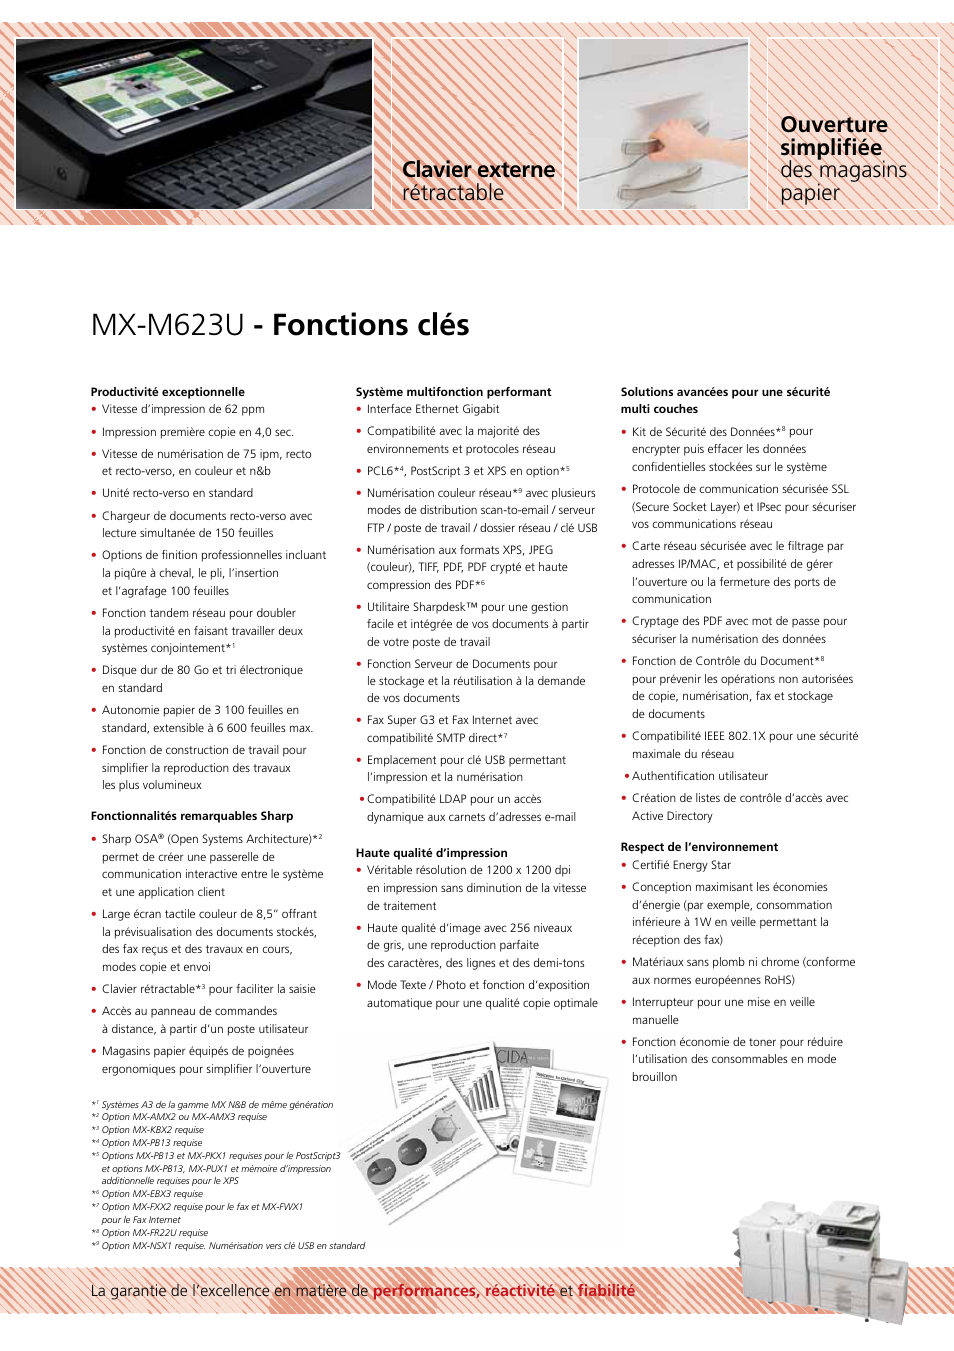 Mx-m623u - fonctions clés, Clavier externe rétractable, Ouverture simpliﬁée des magasins papier | Sharp MX-M623U Manuel d'utilisation | Page 3 / 12